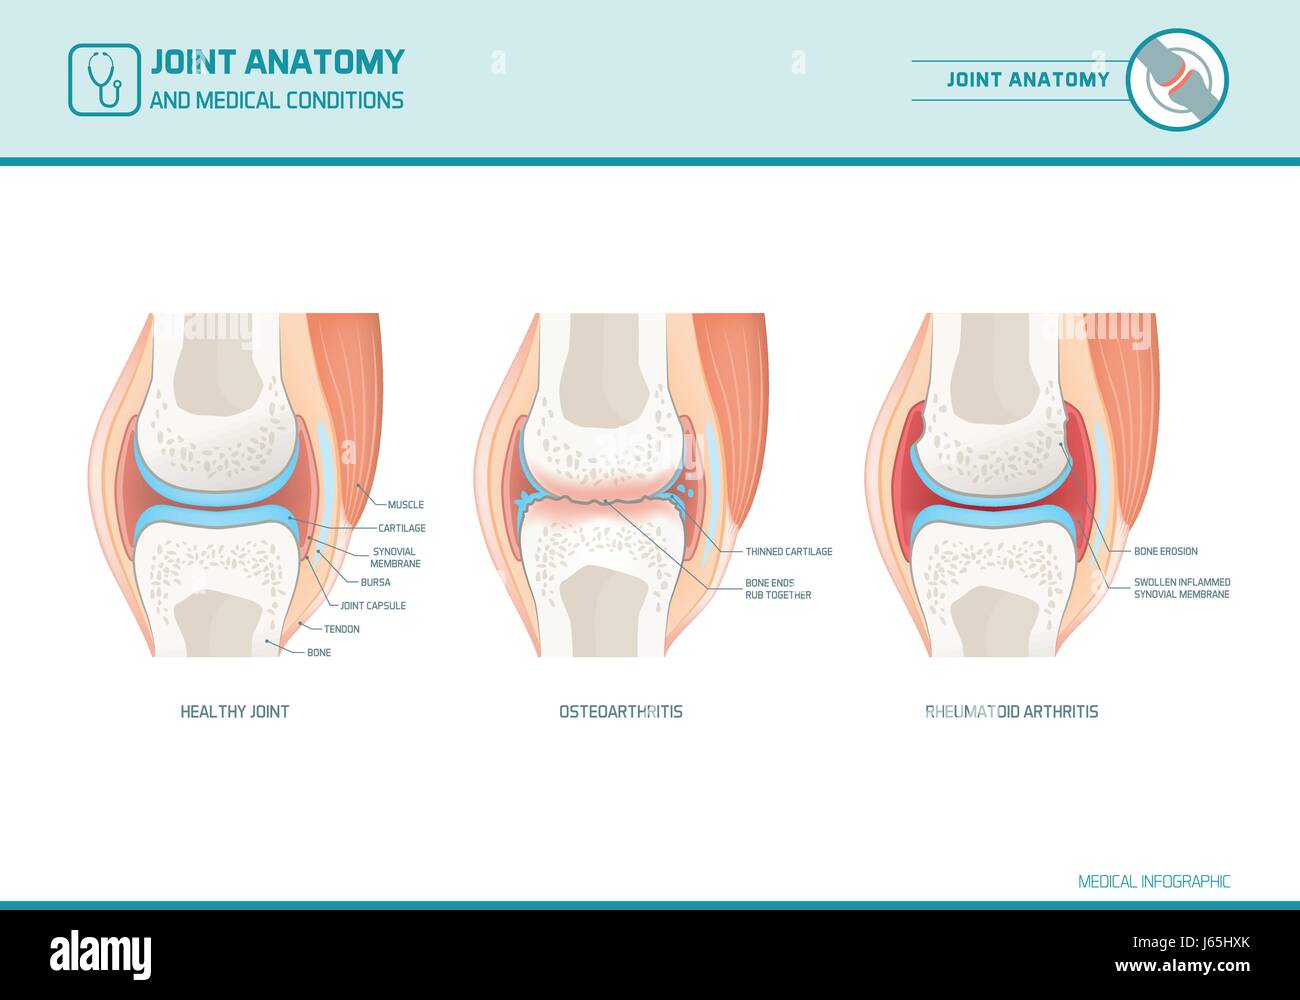 Gemeinsame Anatomie, Arthrose und rheumatoider Arthritis Infografik mit anatomischen Abbildungen Stock Vektor